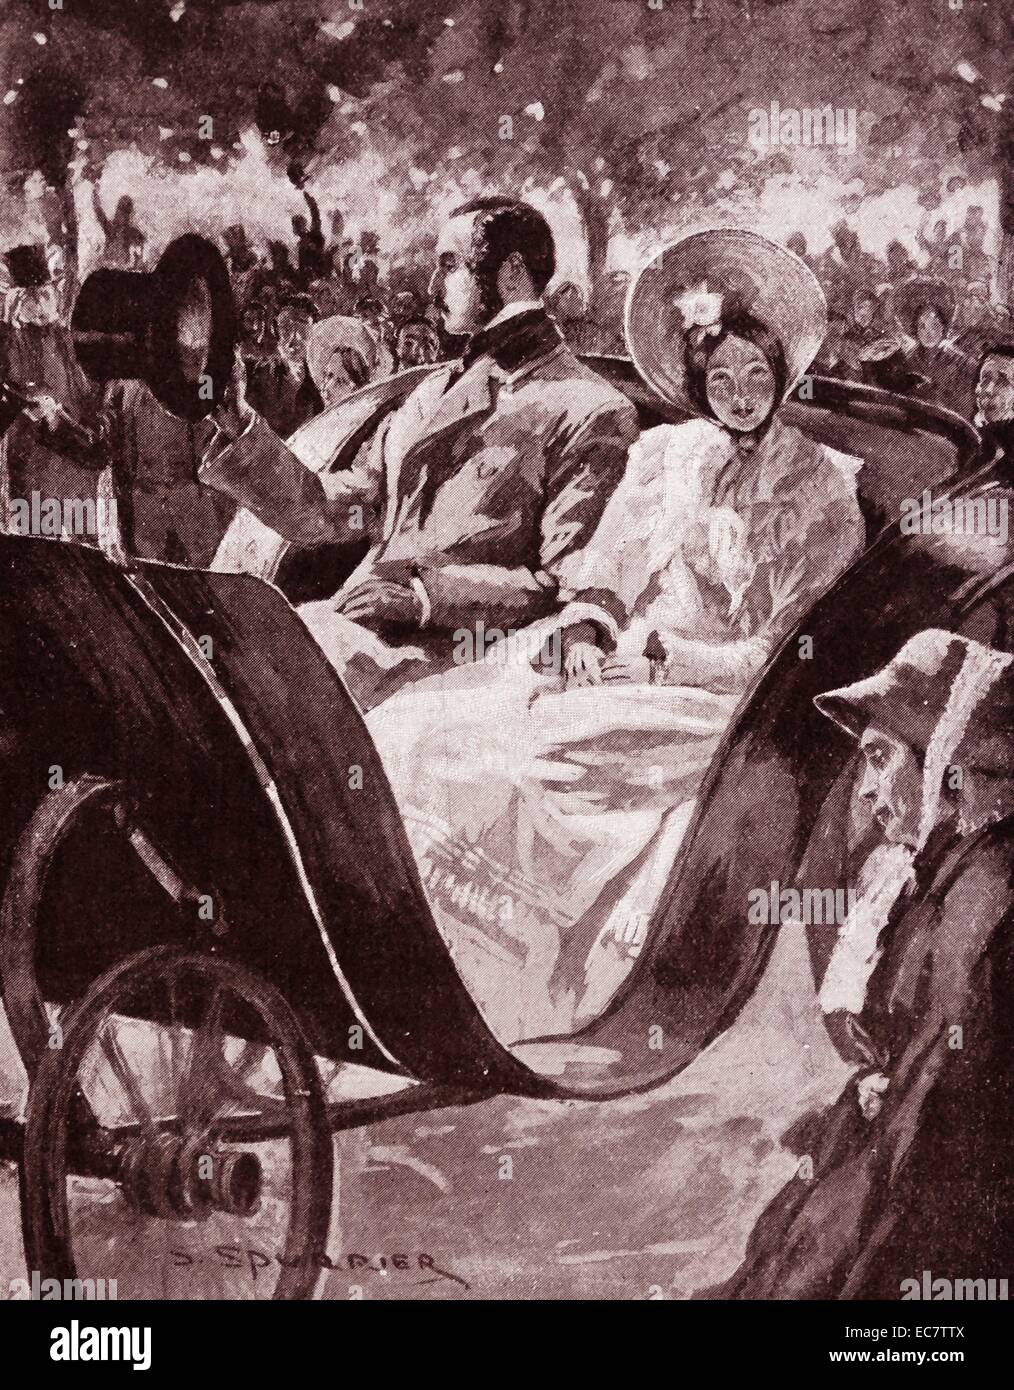 Königin Victoria von Großbritannien und Prinz Albert Reiter in einem Wagen 1840. Victoria (Alexandrina Victoria; 24. Mai 1819 - 22. Januar 1901) Der Monarch des Vereinigten Königreichs von Großbritannien und Irland wurde ab dem 20. Juni 1837 bis zu ihrem Tod. Vom 1. Mai 1876, die sie pflegte, die zusätzlichen Titel der Kaiserin von Indien Stockfoto